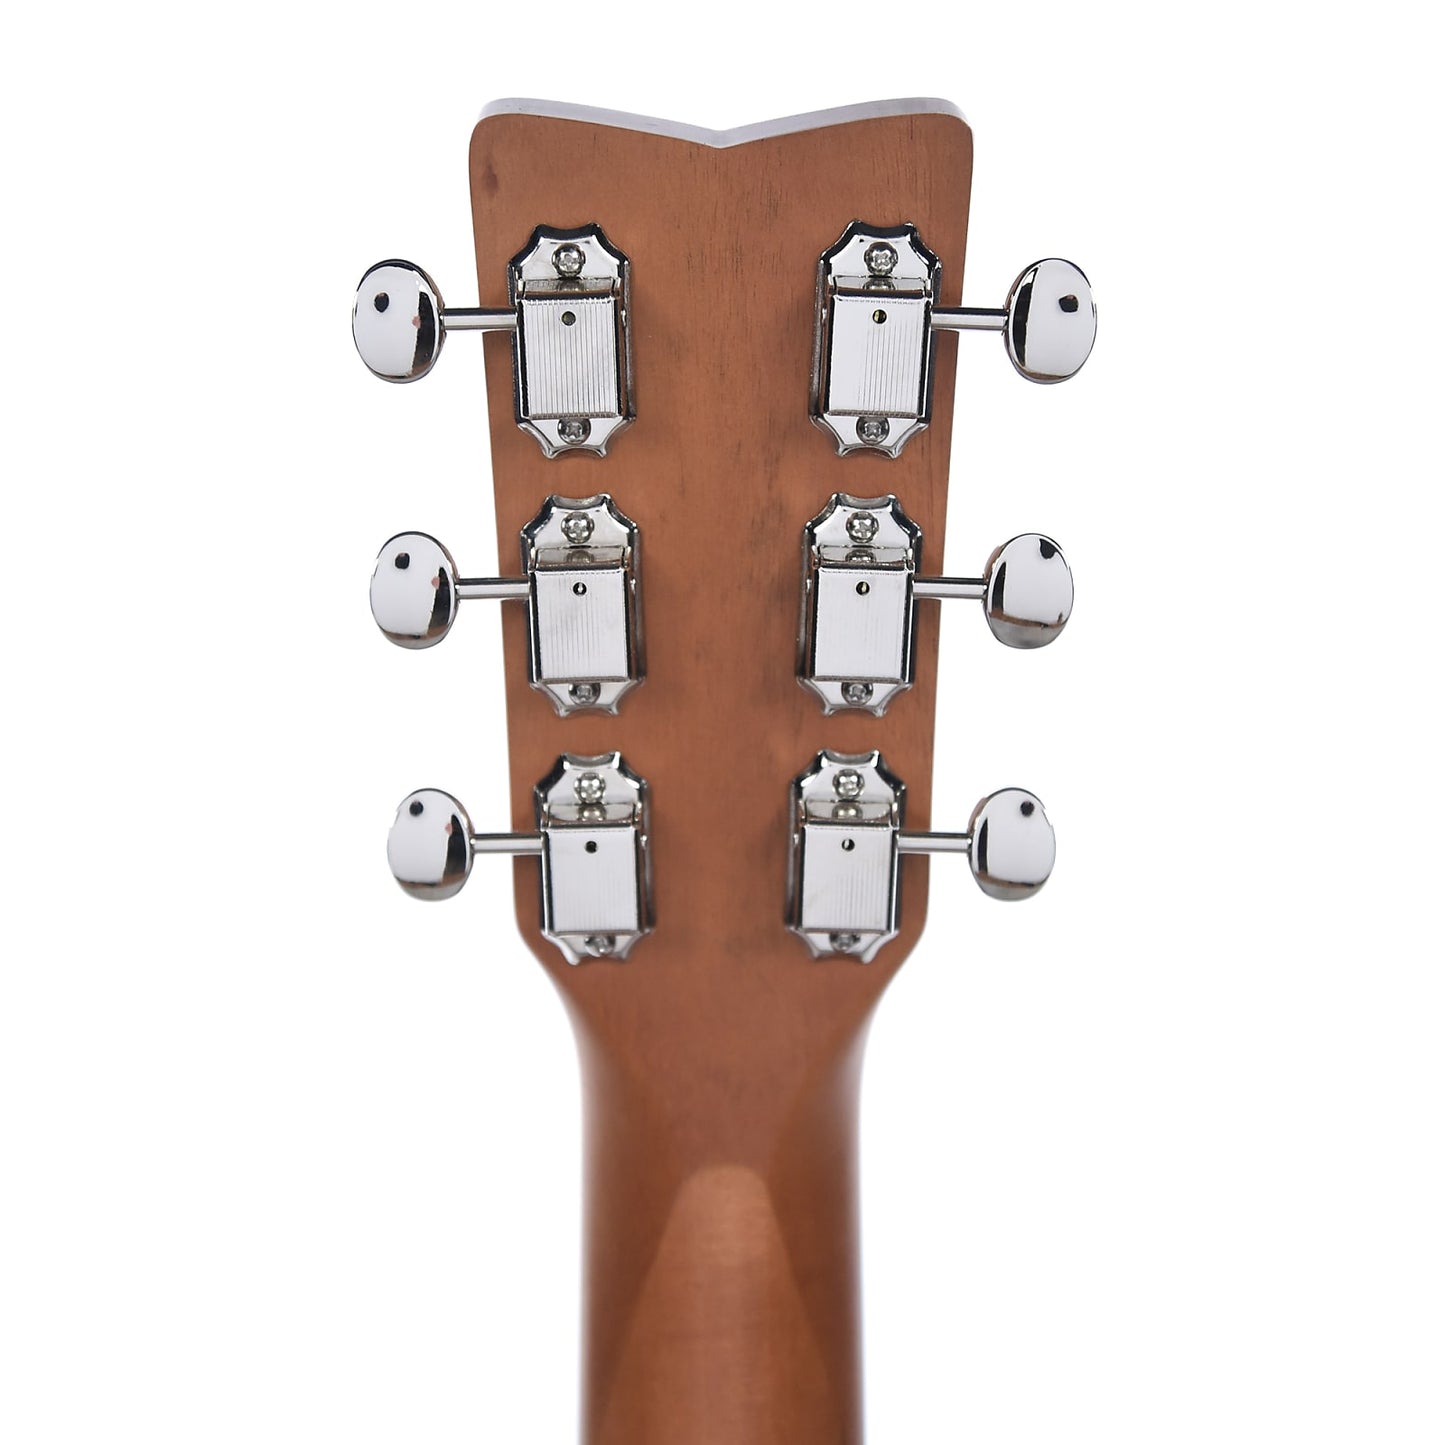 Yamaha JR1 3/4-Scale Acoustic Guitar